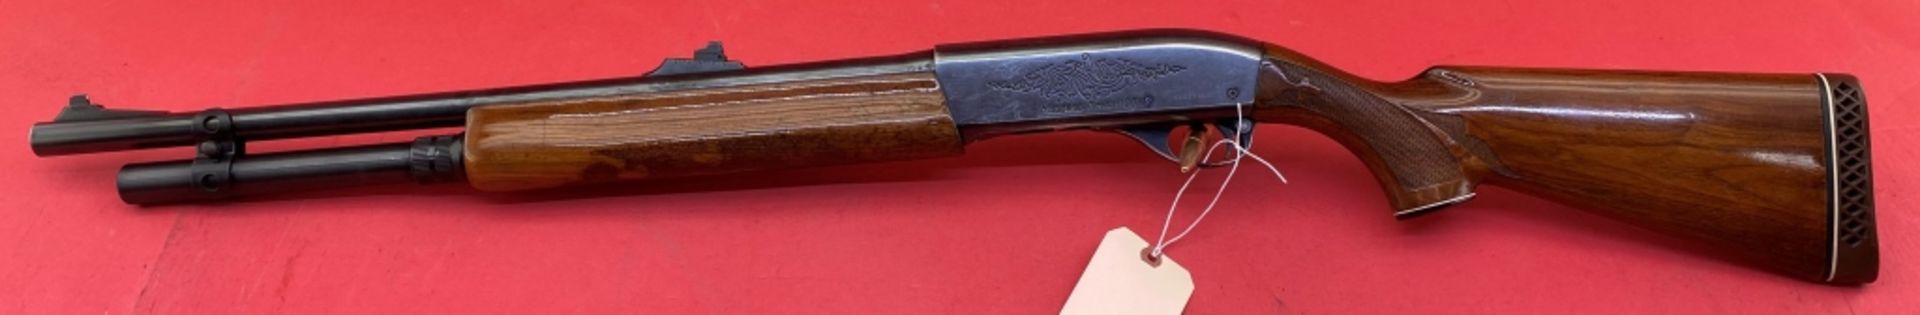 Remington 1100 12 ga Shotgun - Image 12 of 12